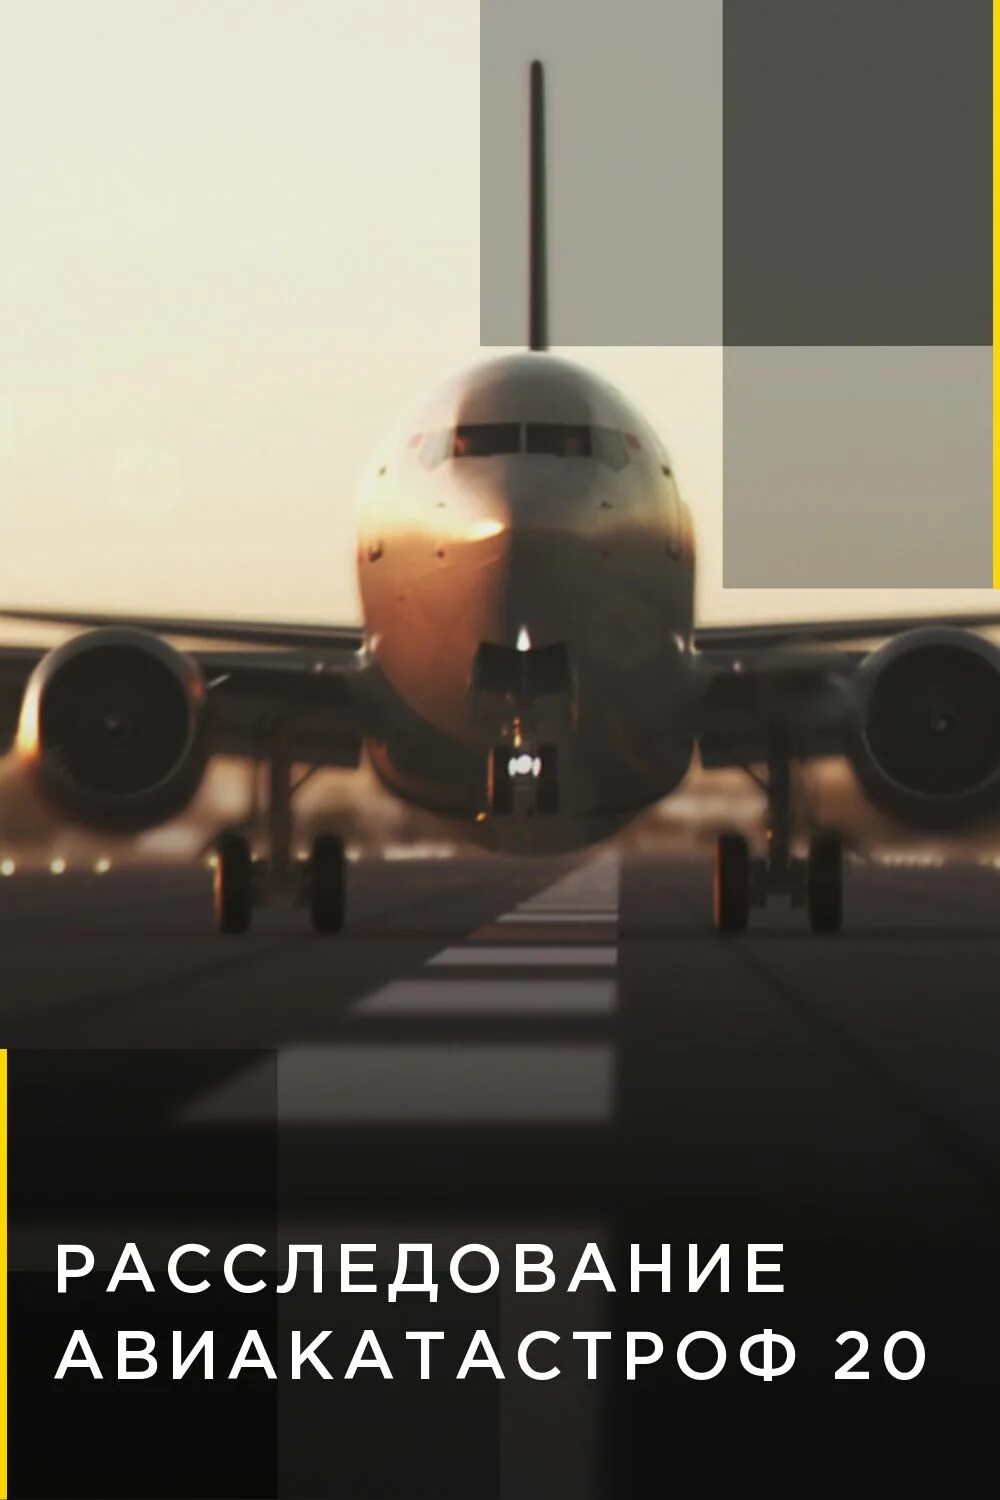 Расследование авиакатастроф 2020. Air crash investigation на National Geographic. Расследование авиакатастроф Постер.